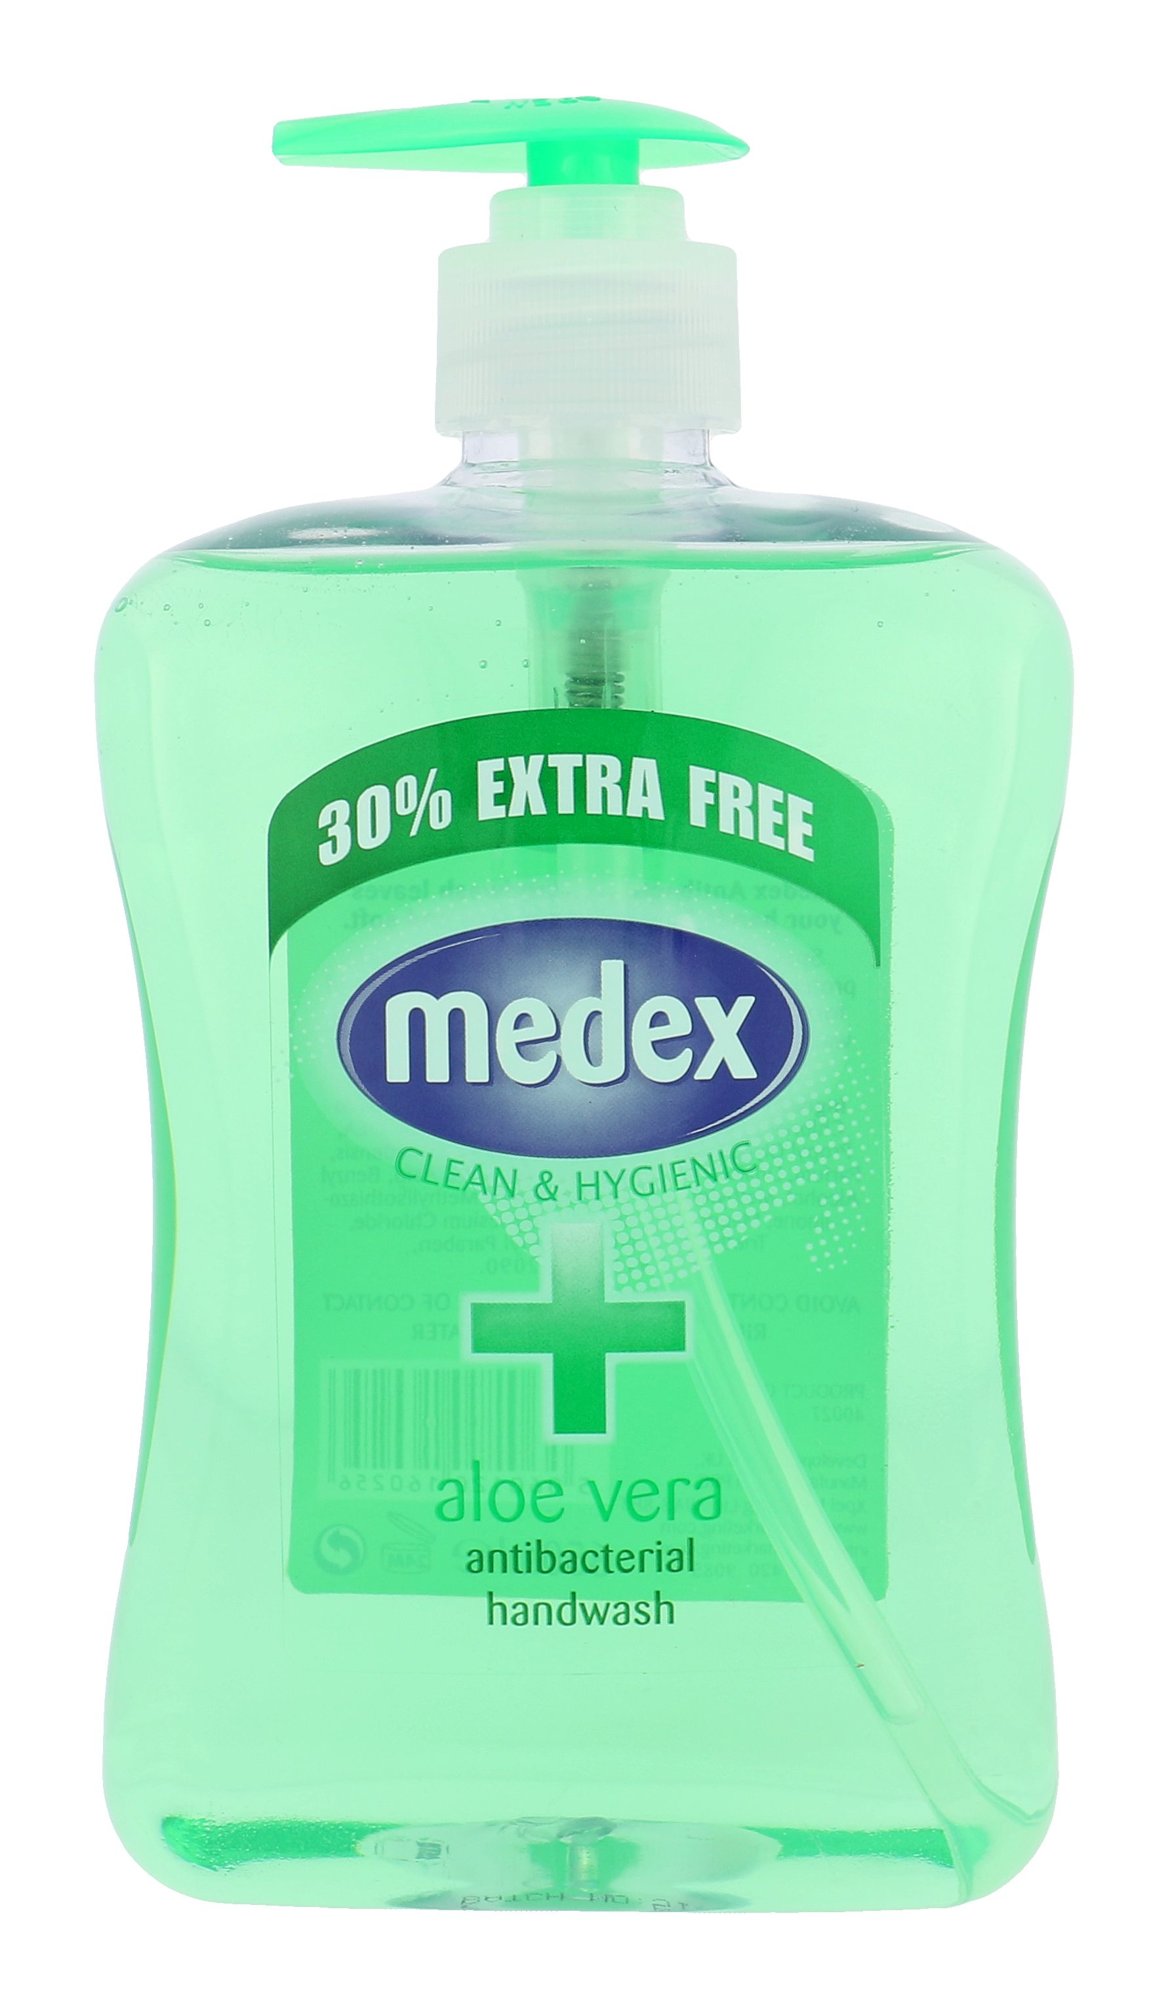 Xpel Medex Aloe Vera Handwash